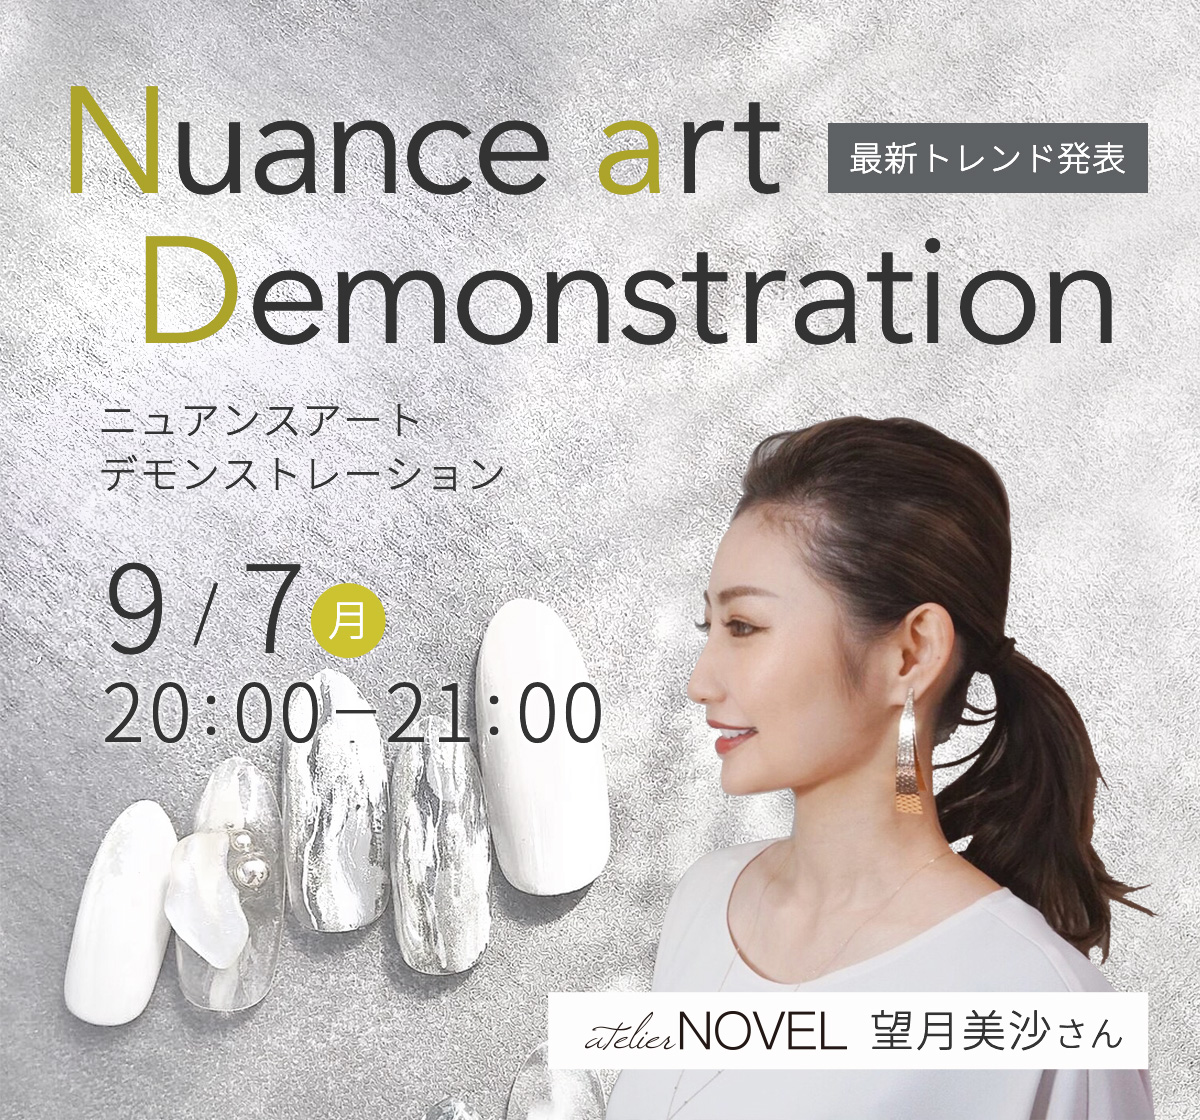 9/7開催 最新トレンド発表 Atelier NOVEL望月美沙さんニュアンスアートデモンストレーション